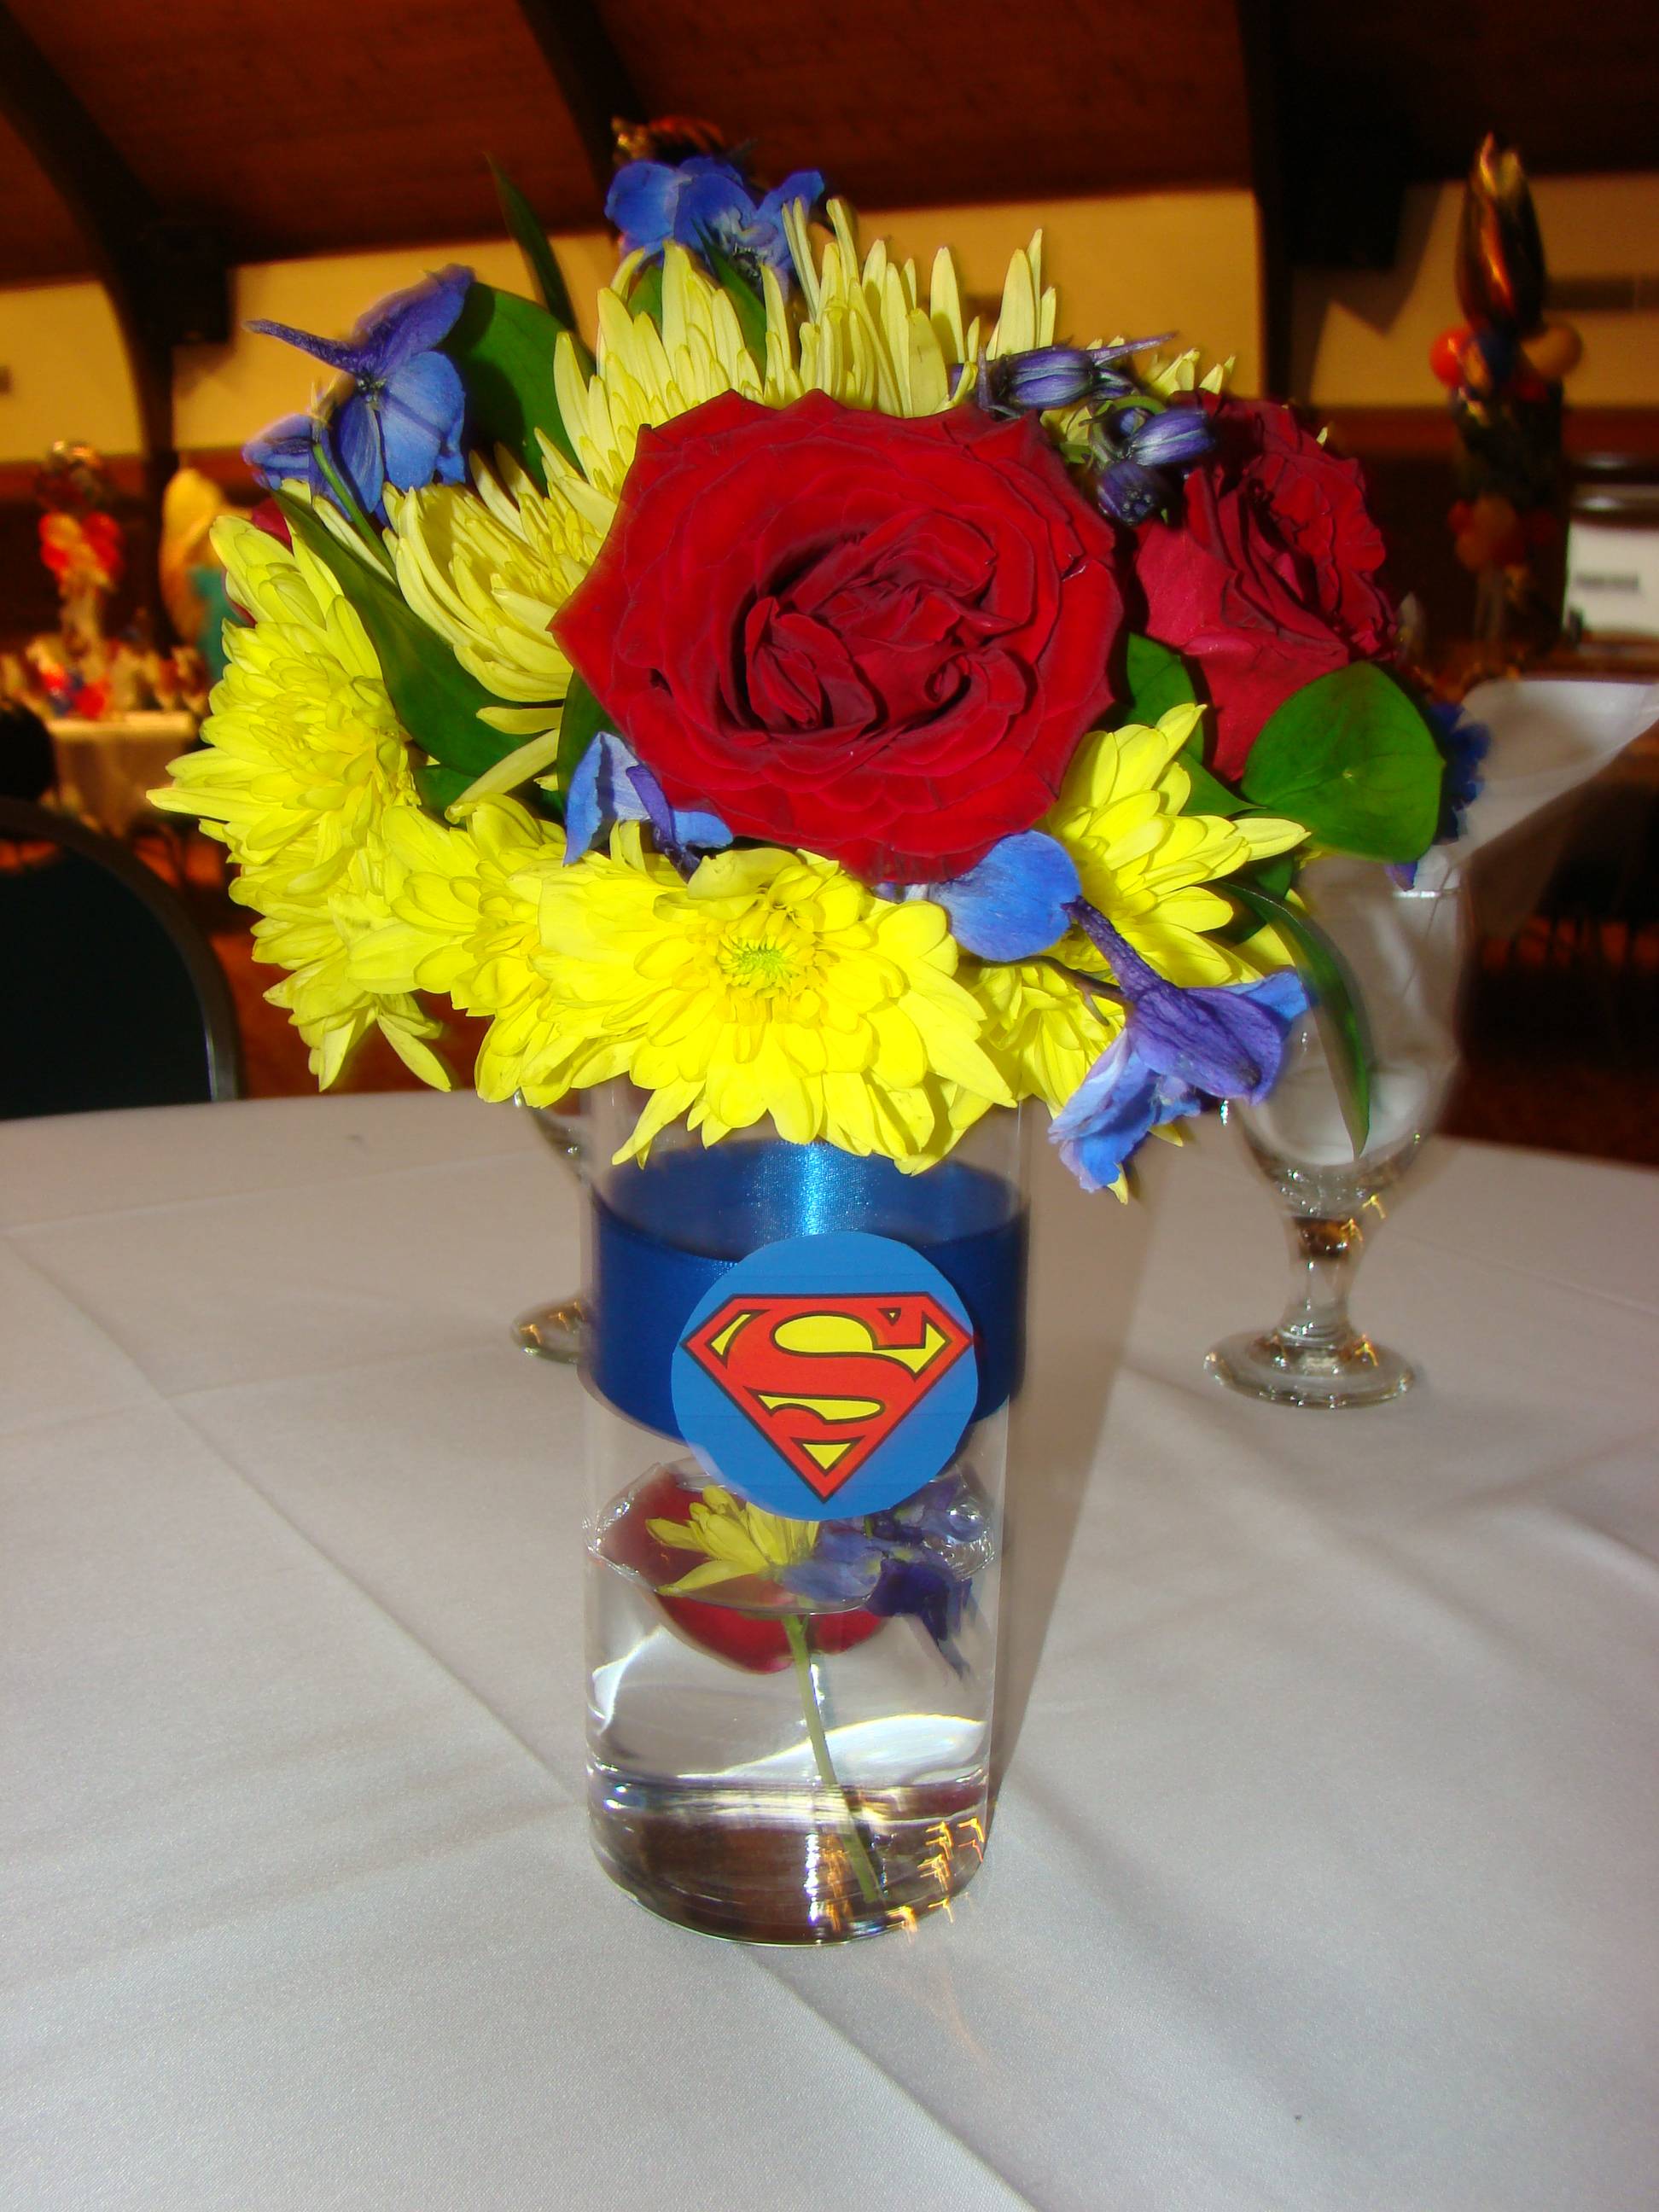 Superman Flower Logo - Superman Flower Logo | www.topsimages.com